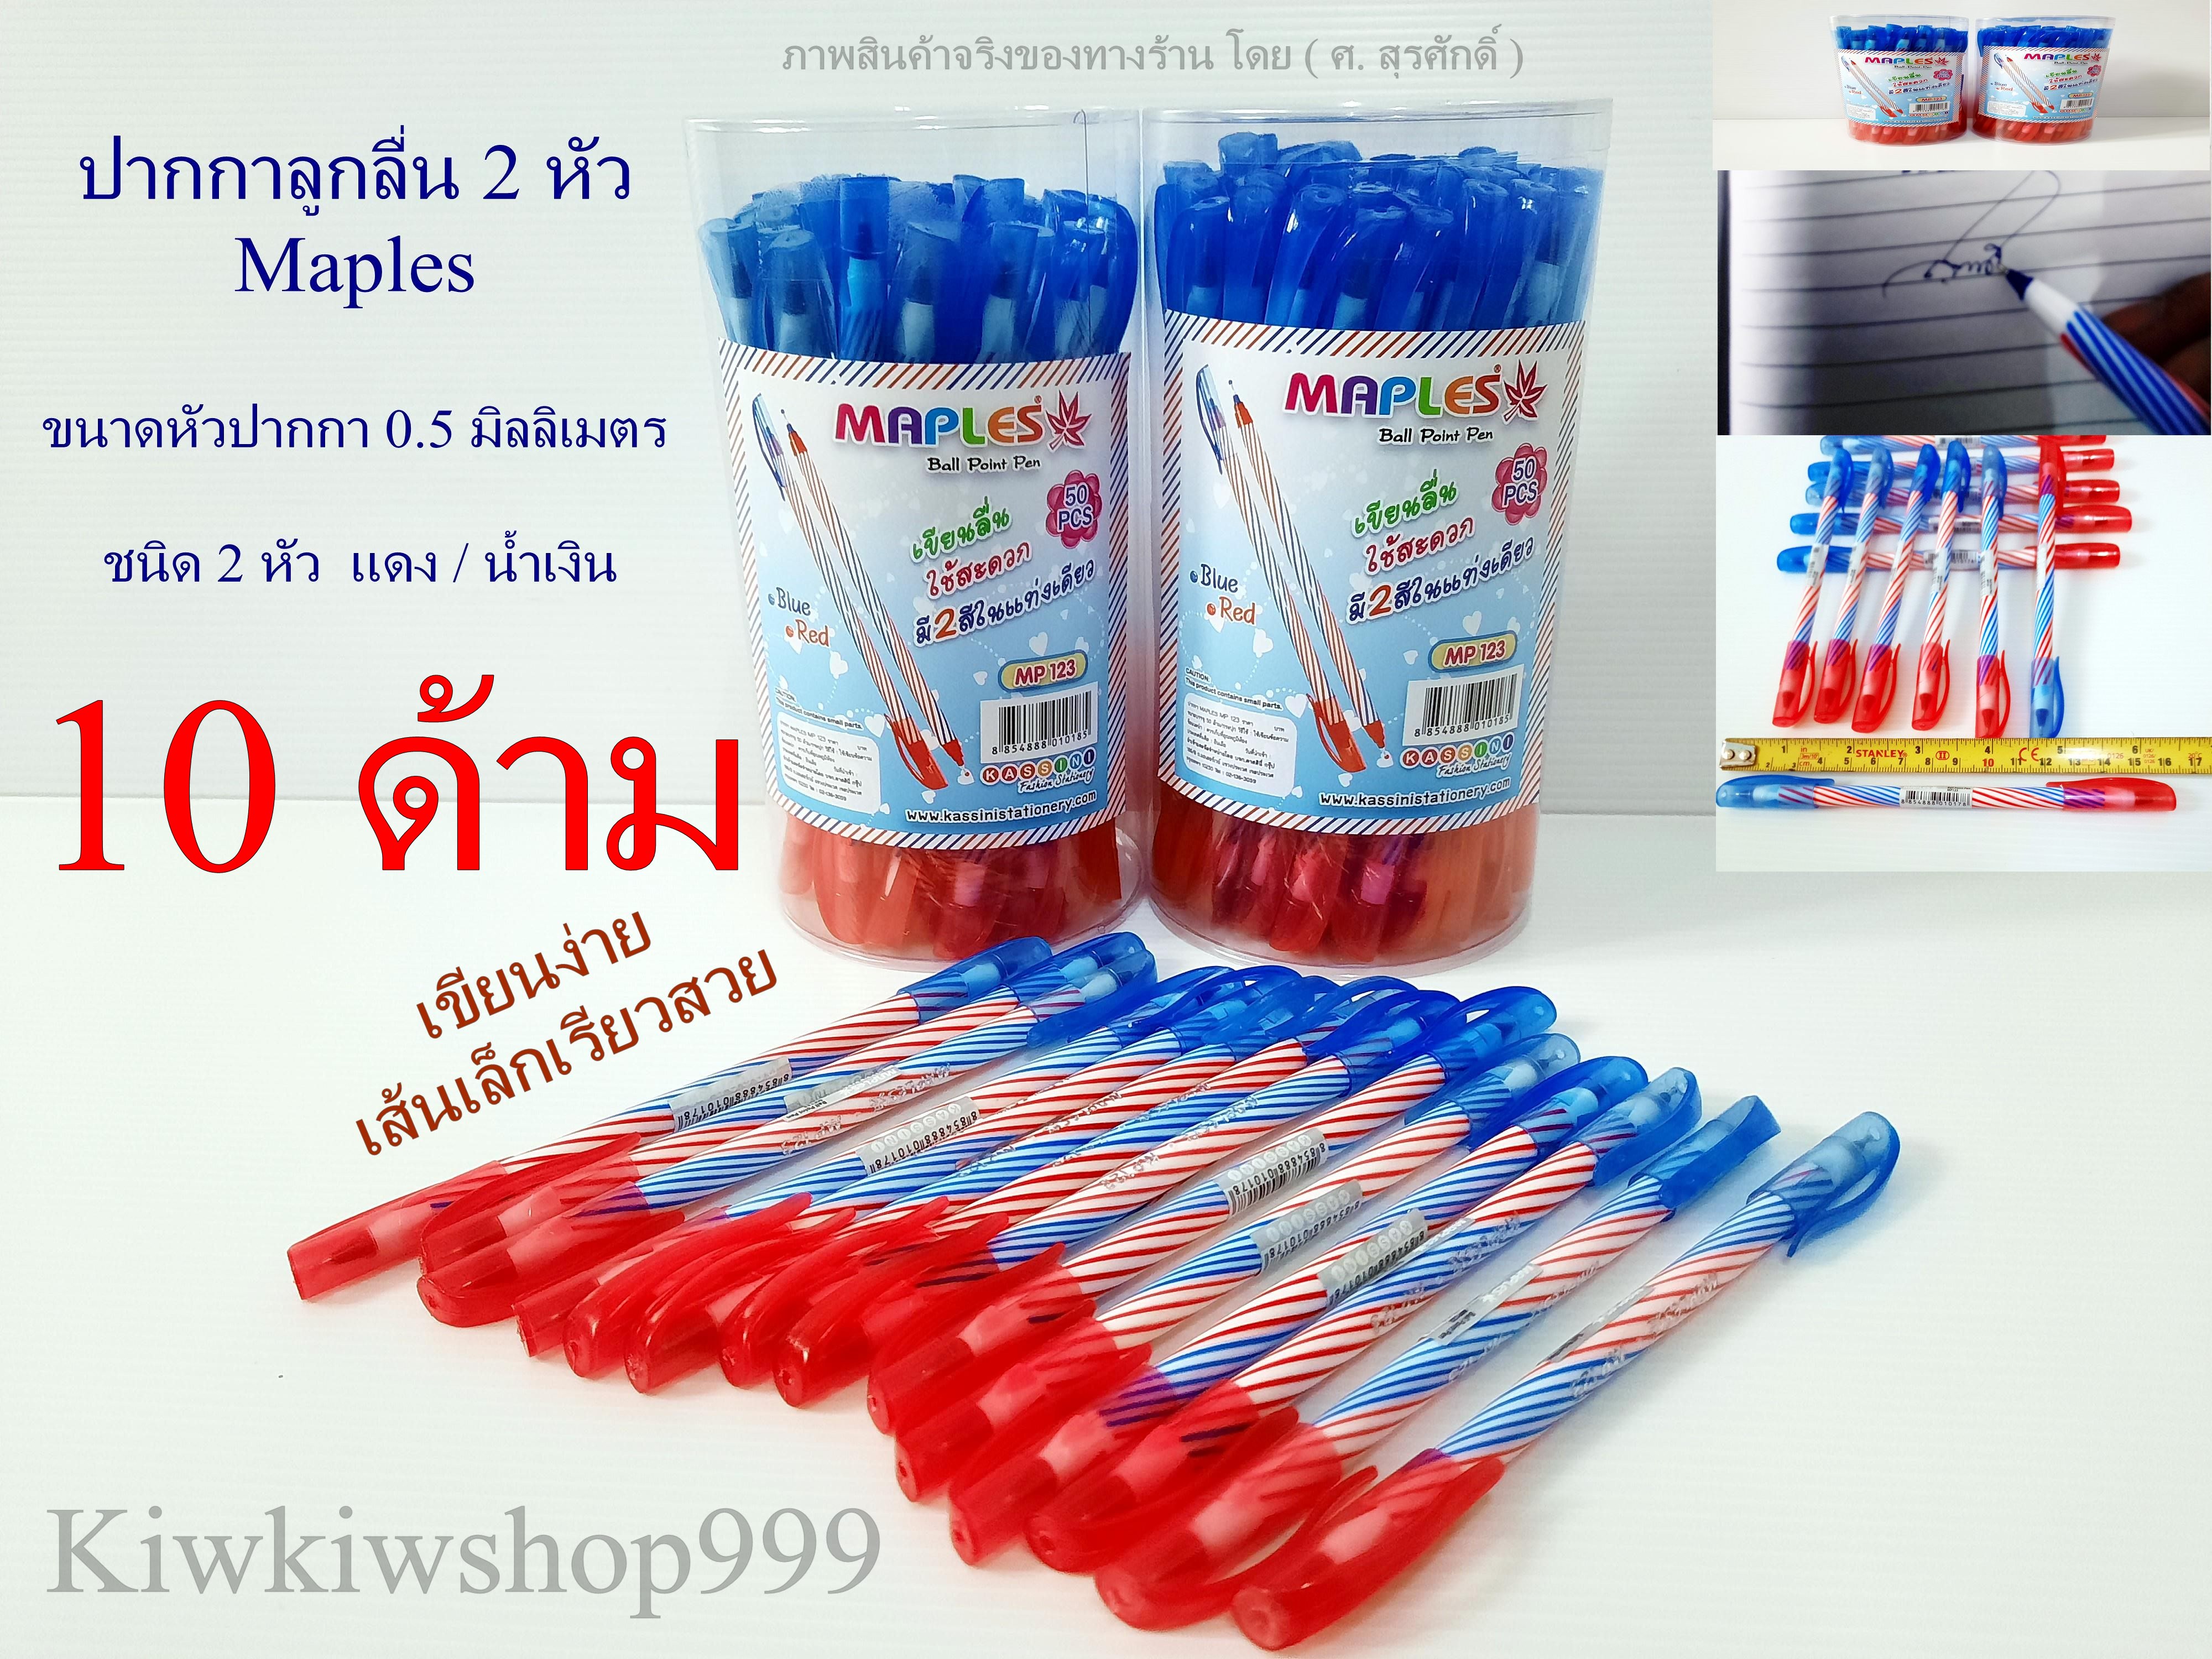 ปากกาลูกลื่น 2 หัว ( 10 ด้าม ) ปากกา Pen หัว 0.5 มม. ปากกาลูกลื่น Maples Pen สีน้ำเงิน/แดง ในแท่งเดียว เส้นเล็ก เรียว สวย เขียนง่าย ปากกา pen